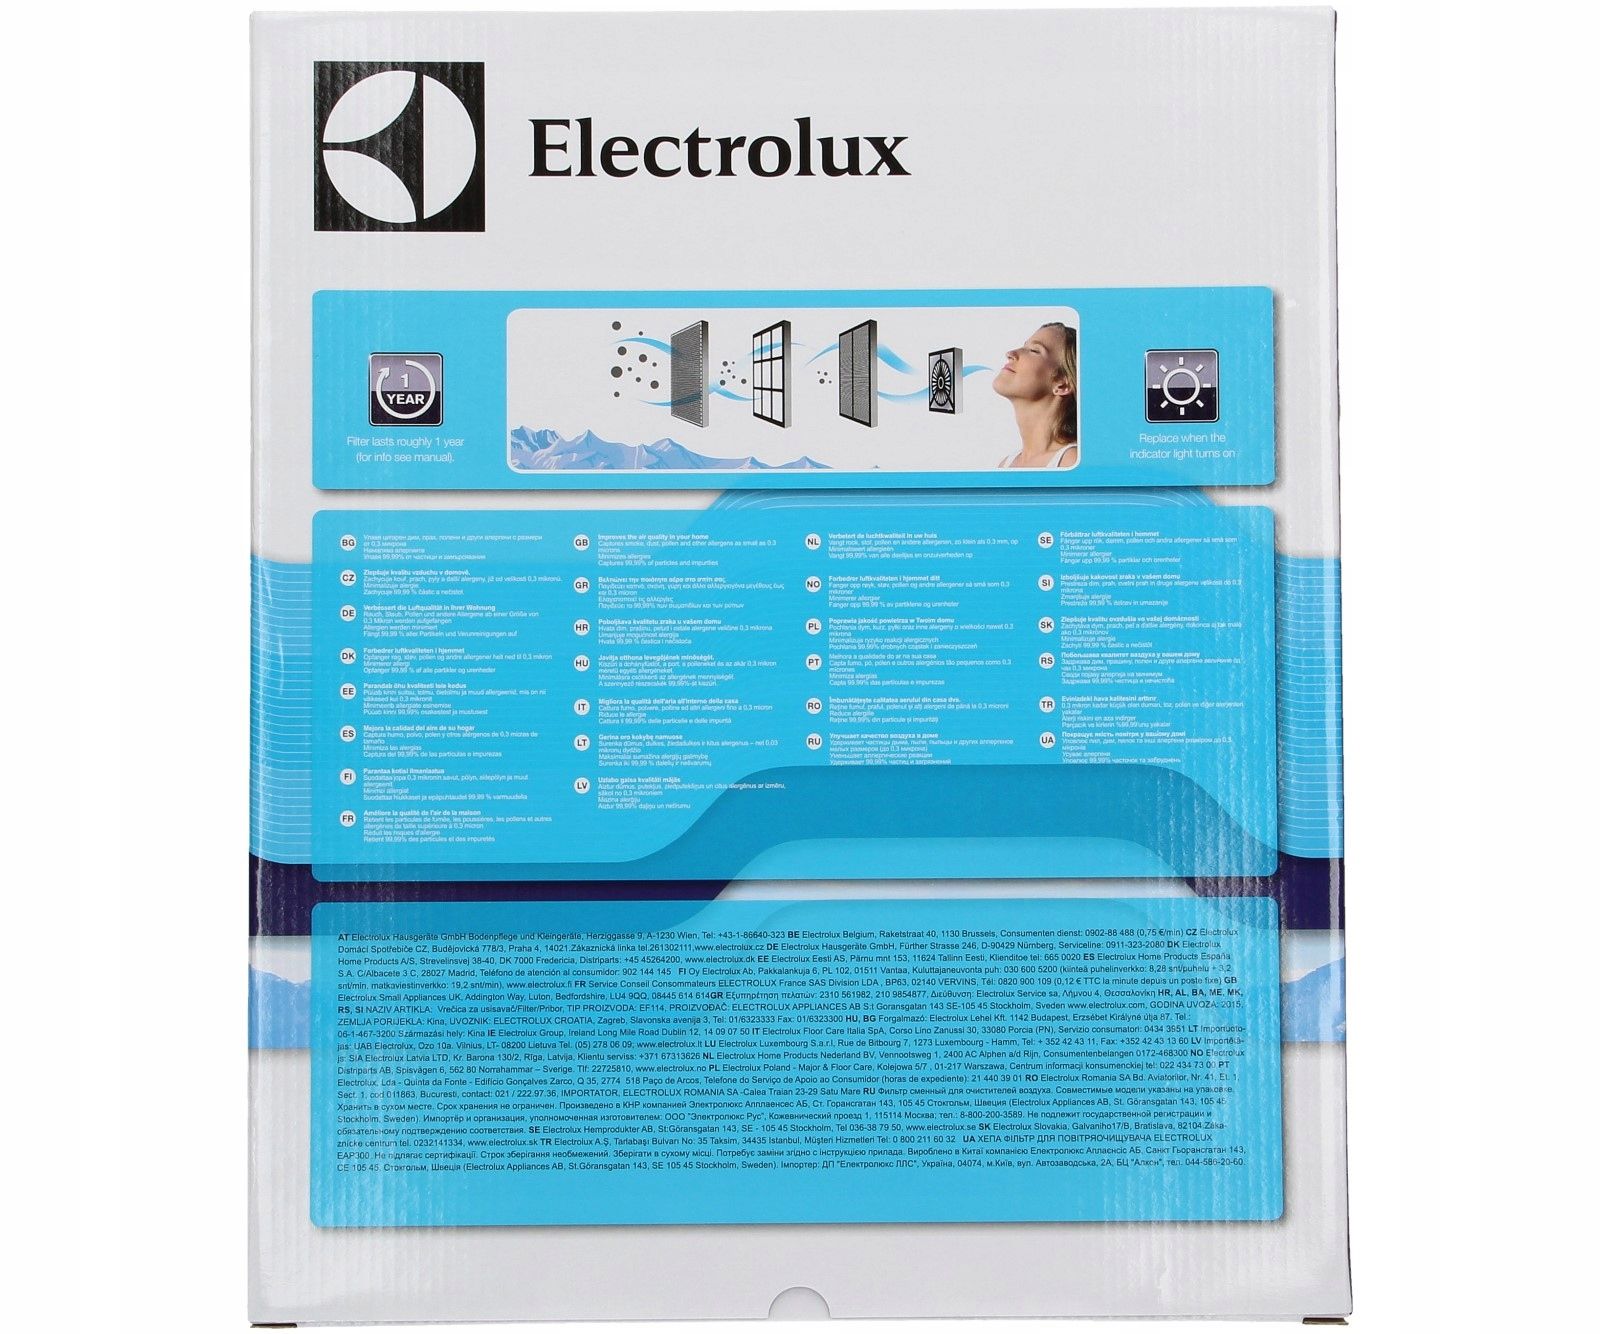 outlet filtr do oczyszczacza electrolux ef114 części i akcesoria